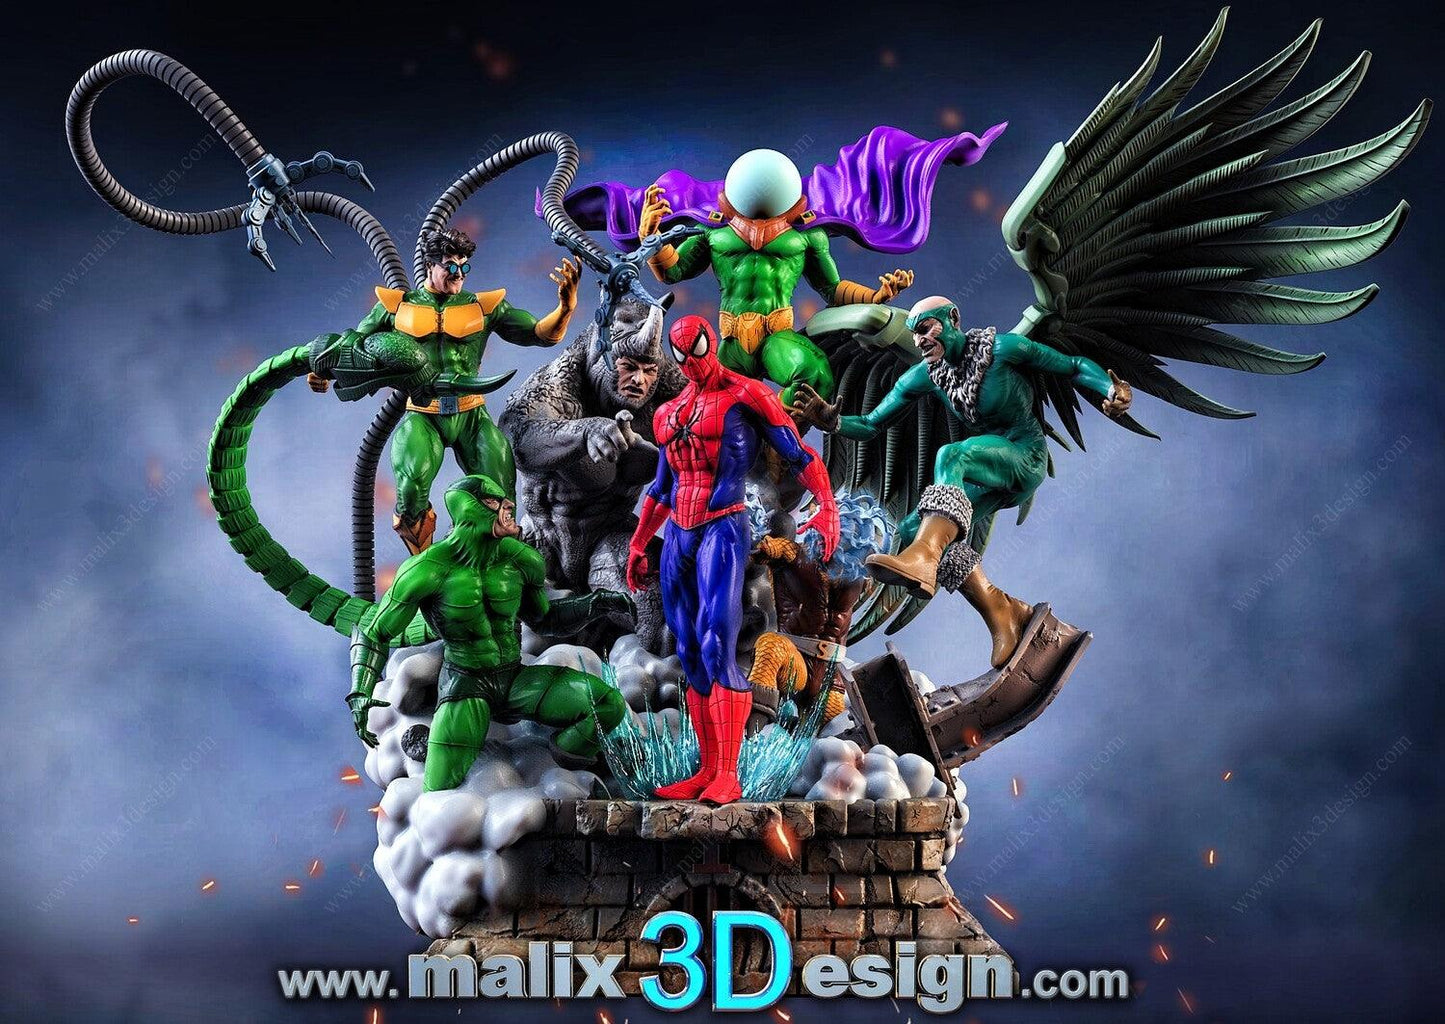 Los 6 Siniestros - Spiderman (Diorama posible) - TODO ROL SPAIN 